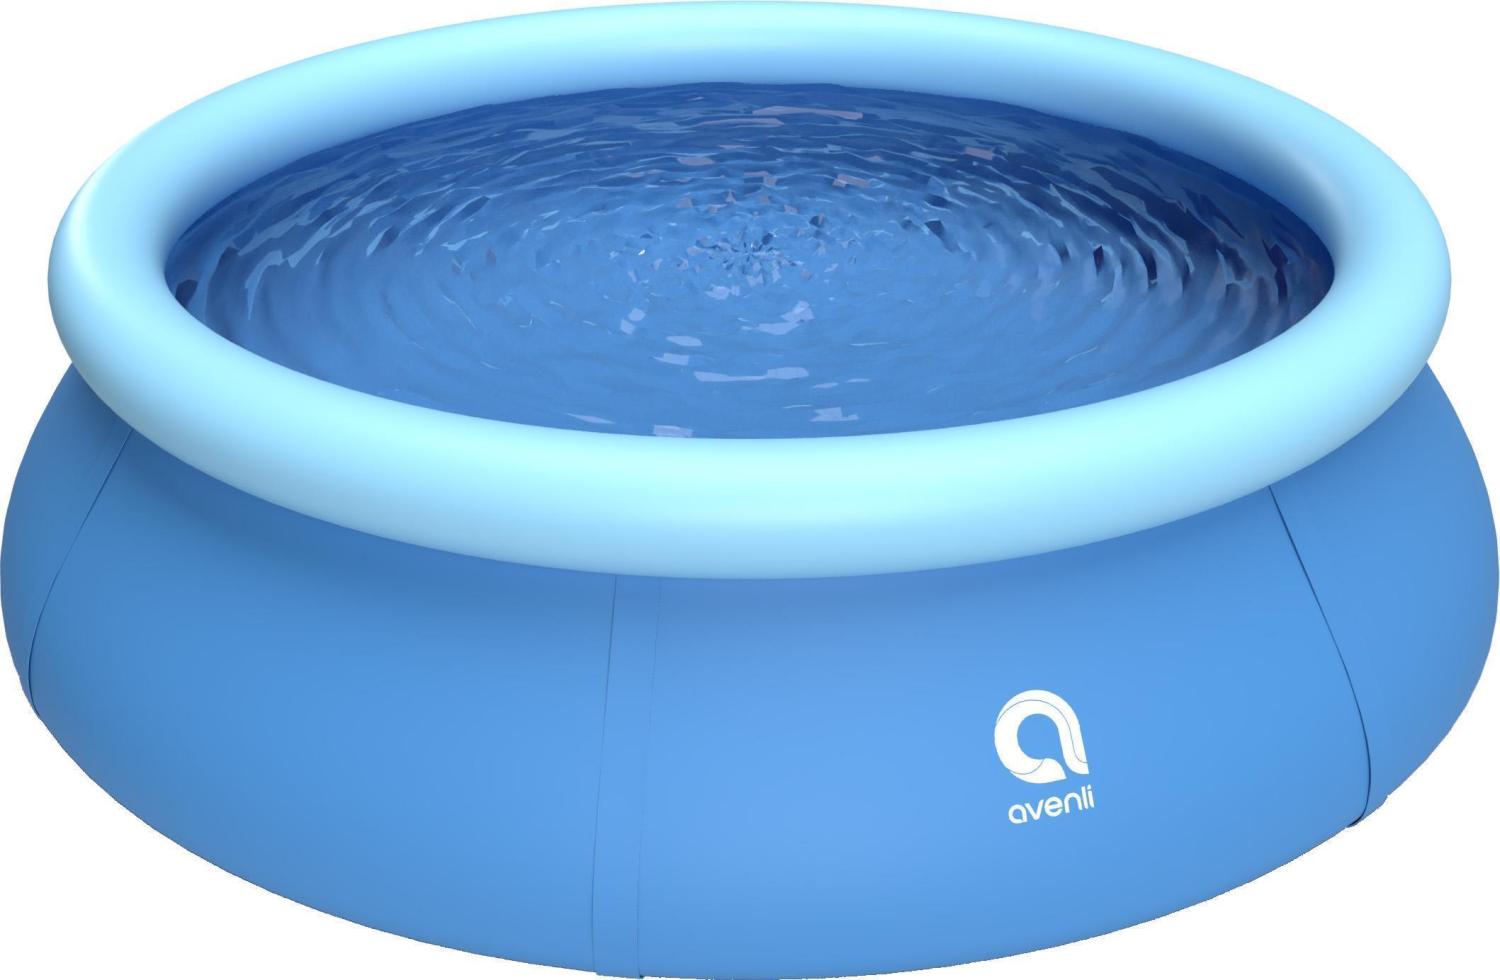 Avenli Prompt Set 240 x 63 cm Quick Up Pool, mit aufblasbarem Ring ohne Zubehör, blau Bild 1